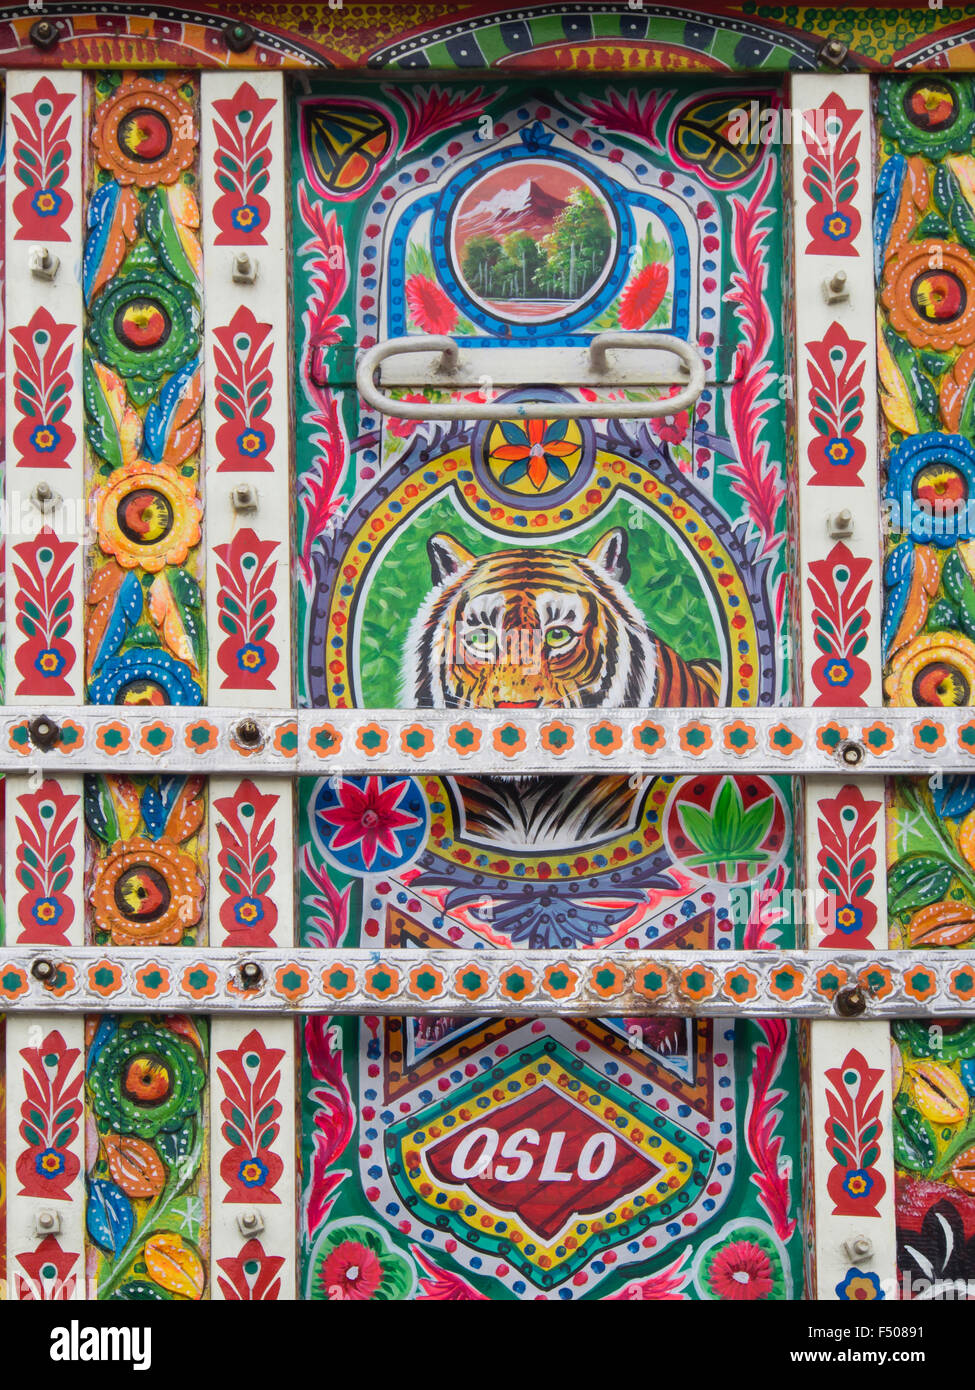 Dettagli da un elaborato e decorate artisticamente colorato camion Bedford in stile pakistano, sul display in Oslo Norvegia Foto Stock